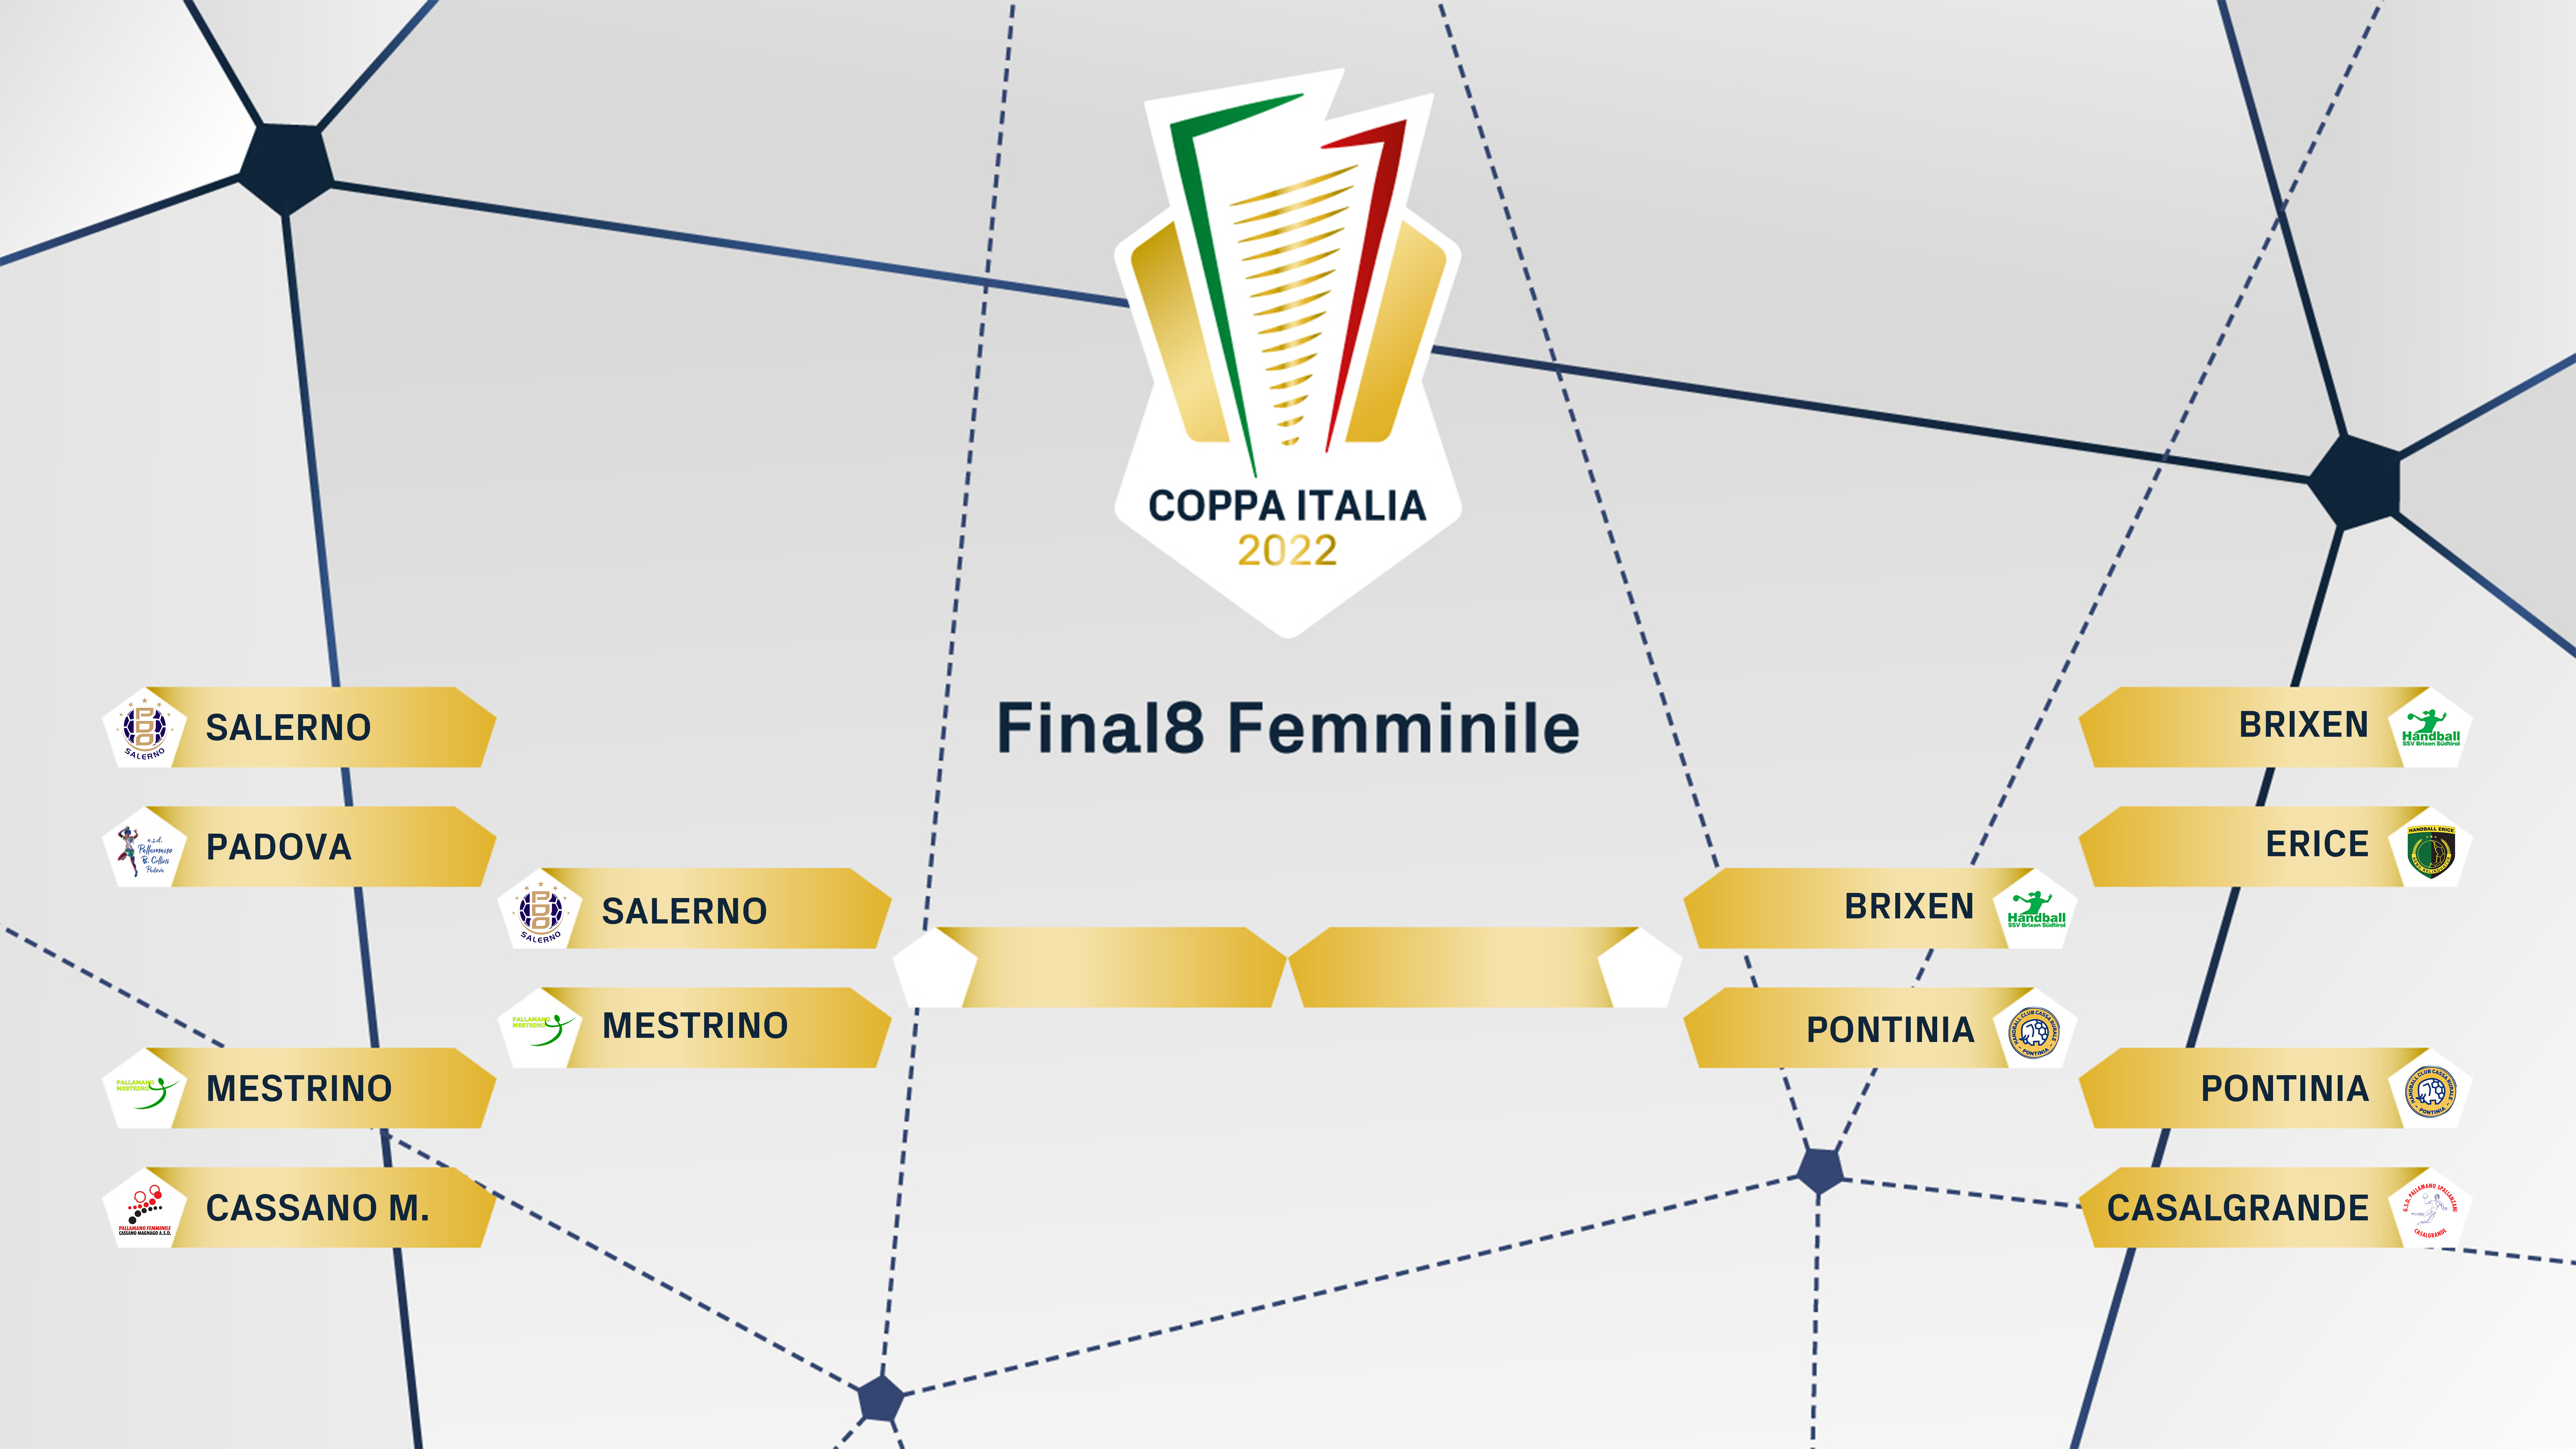 FIGH Coppa Italia tabelloni